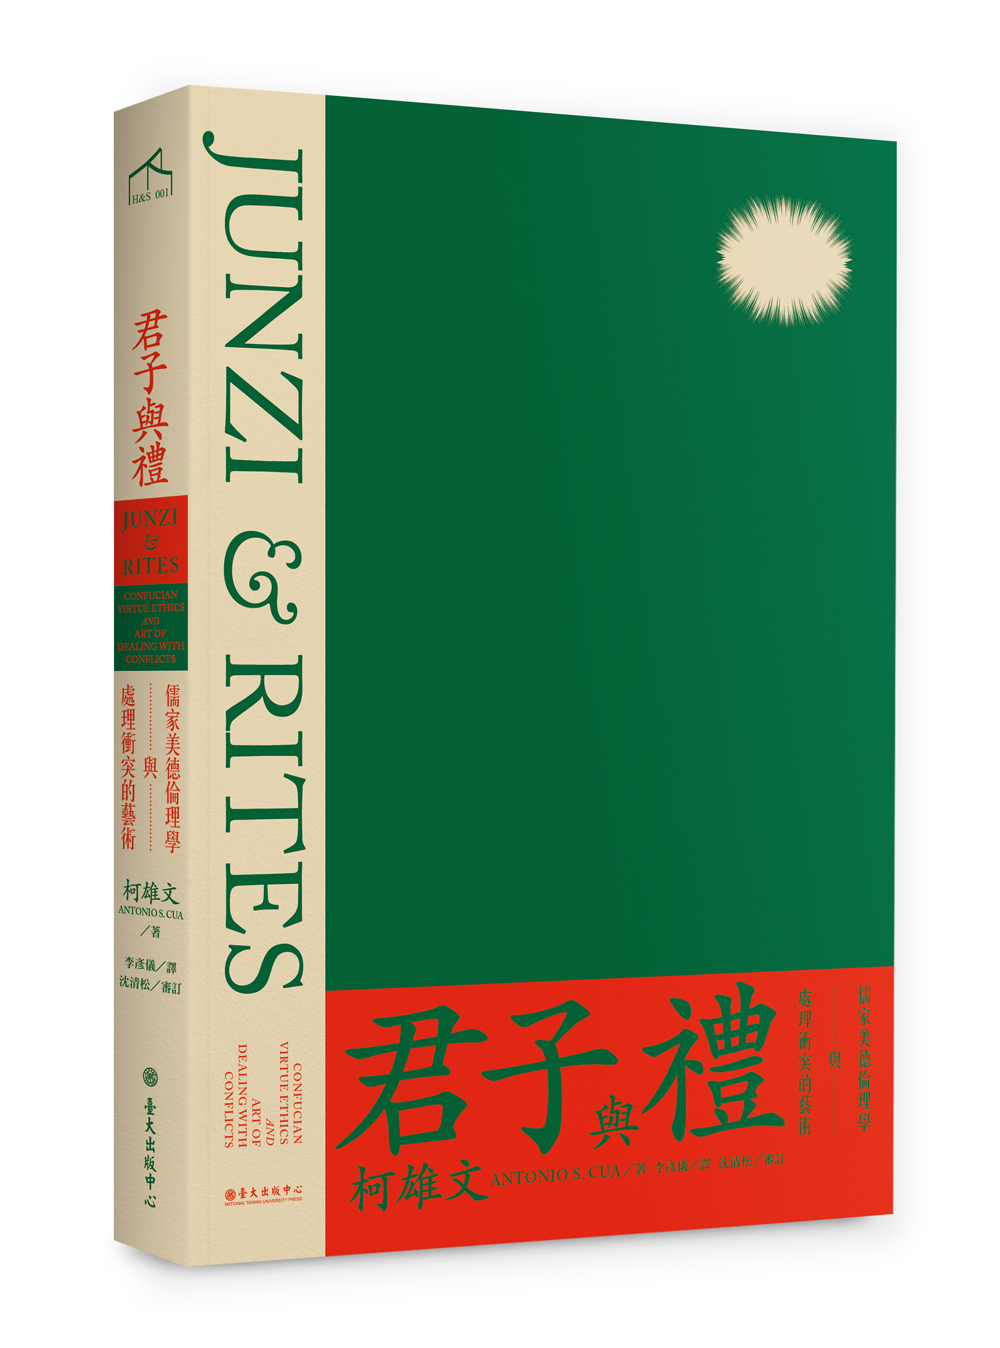 君子與禮──儒家美德倫理學與處理衝突的藝術